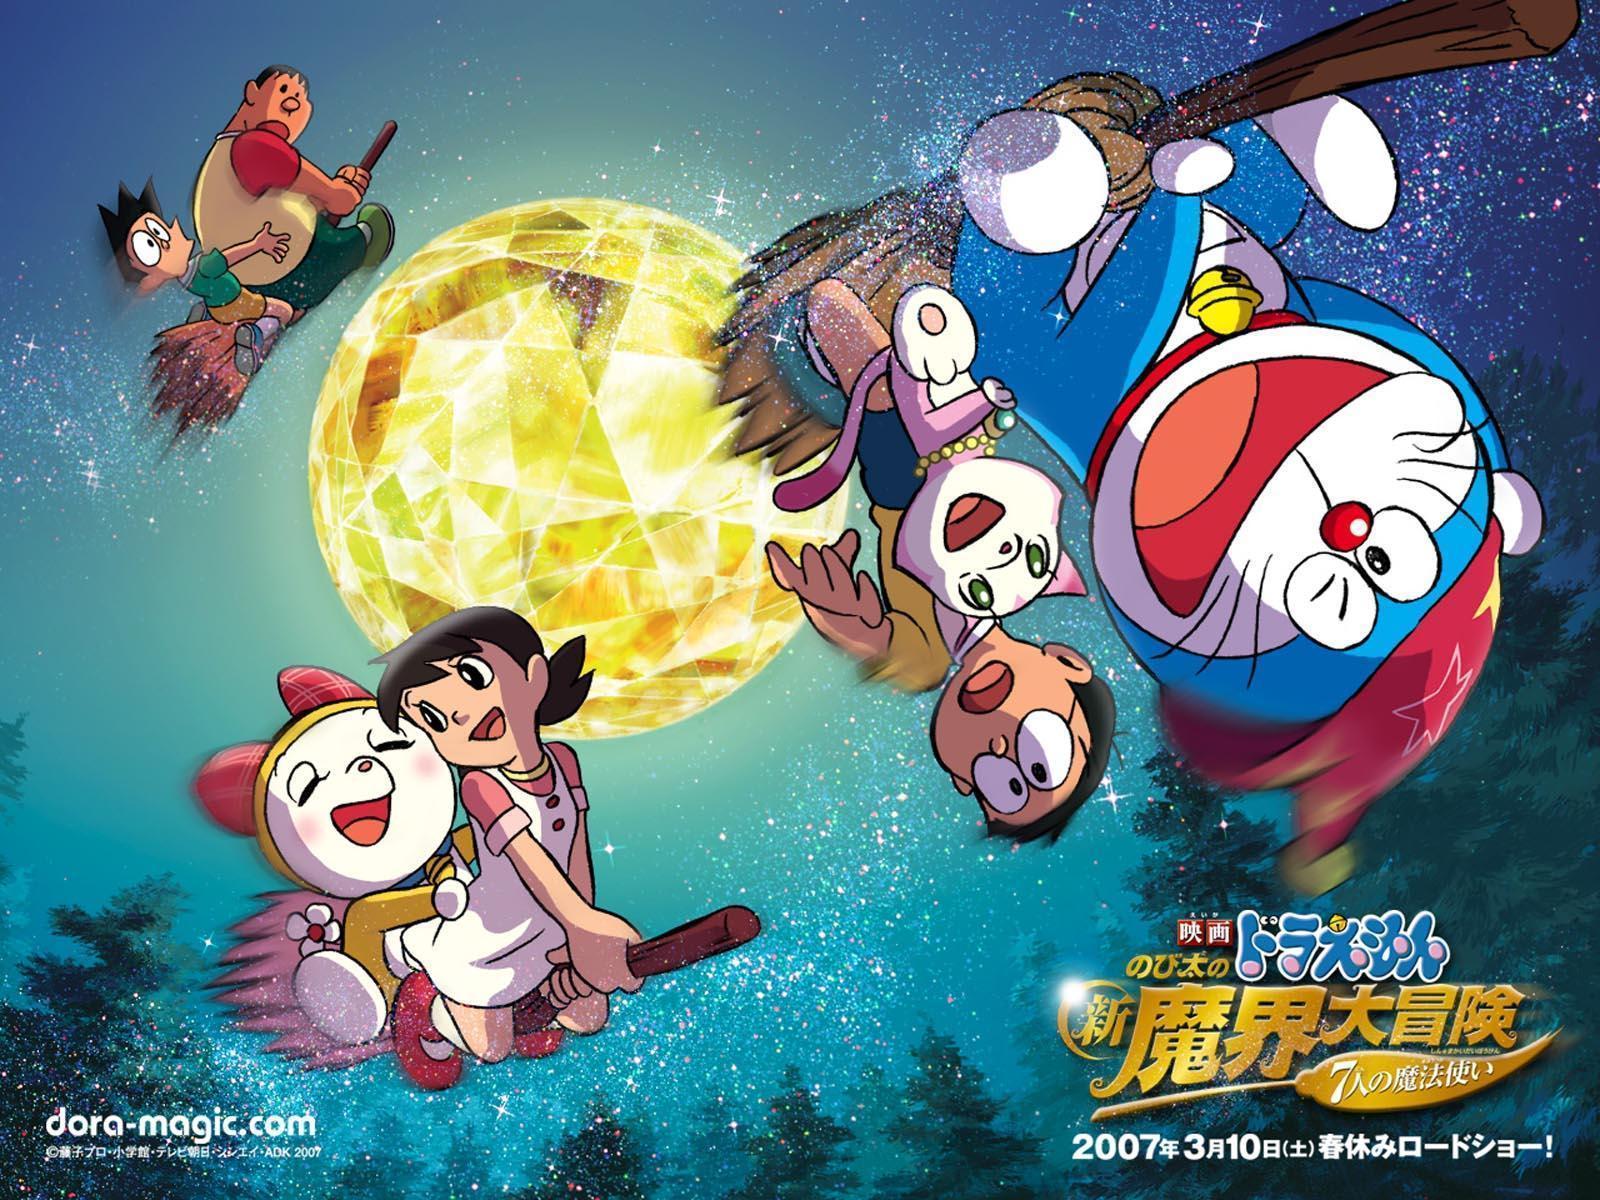 Wallpaper For > Doraemon Wallpaper For Mobile